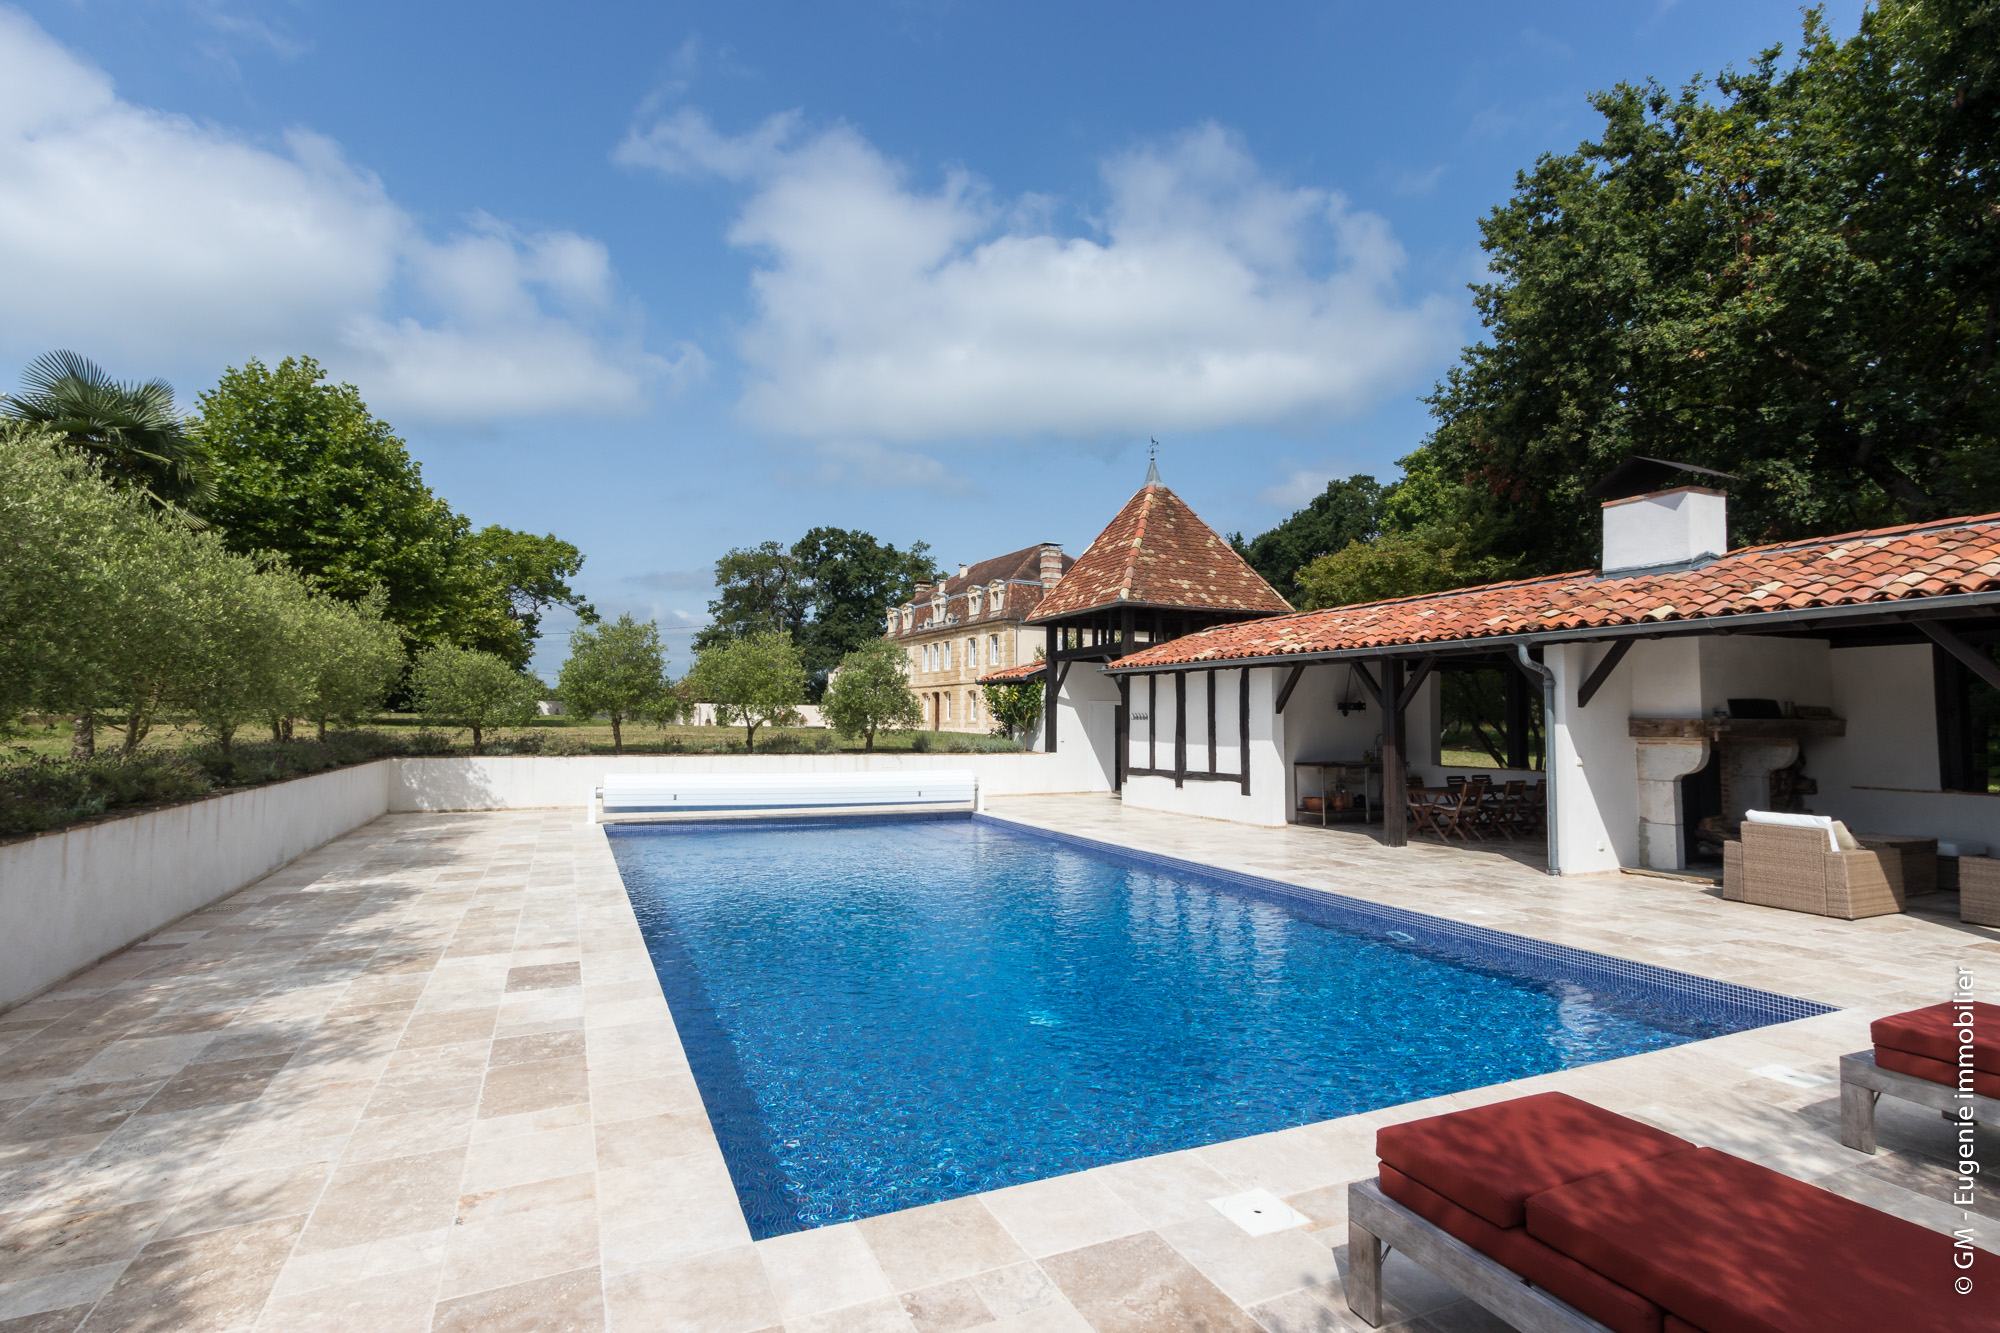 Château du XVIIème entièrement restauré 19 pièces + piscine